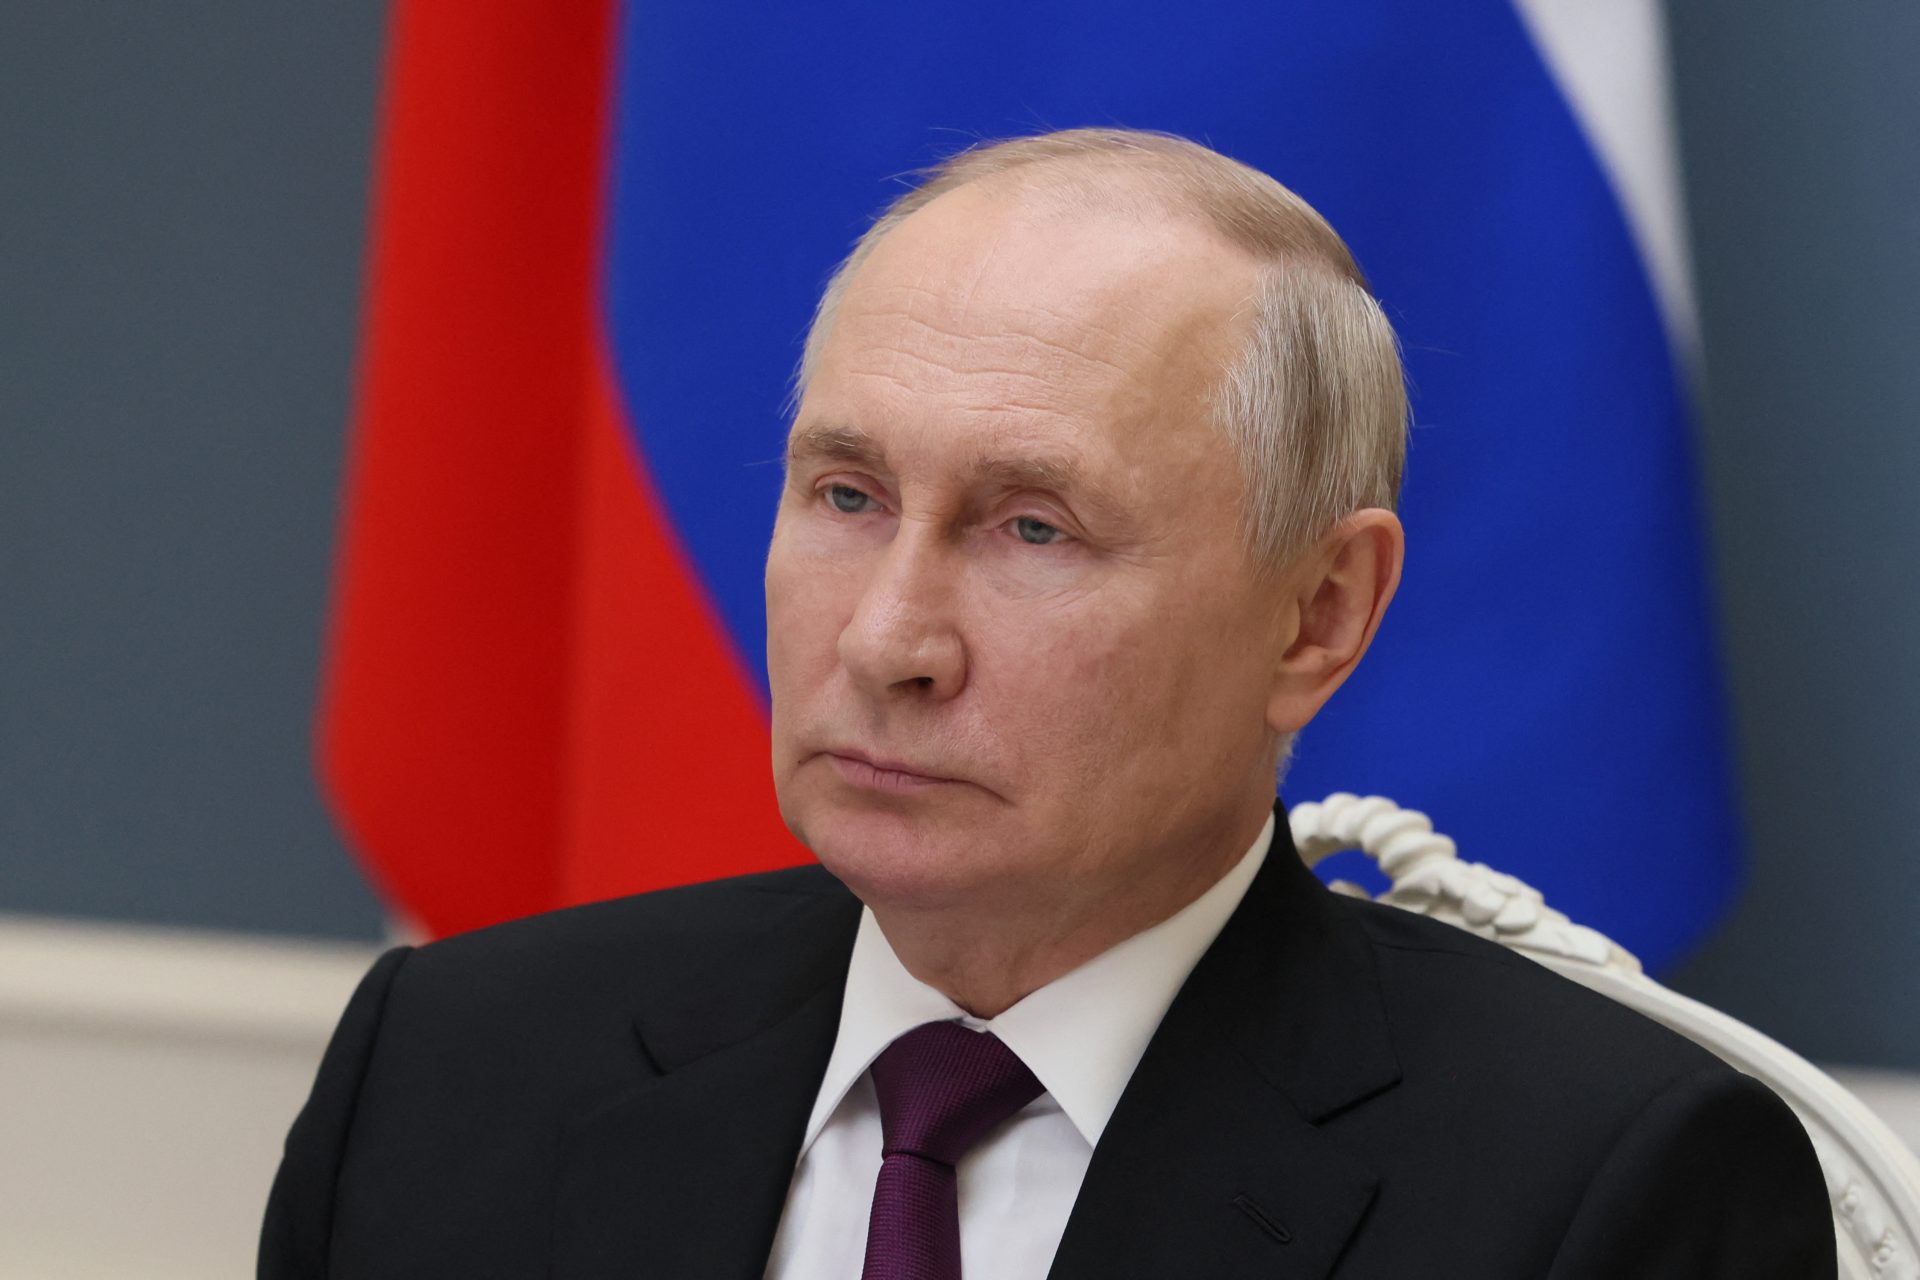 Moeten we ons zorgen maken over nucleaire dreigementen van Poetin?